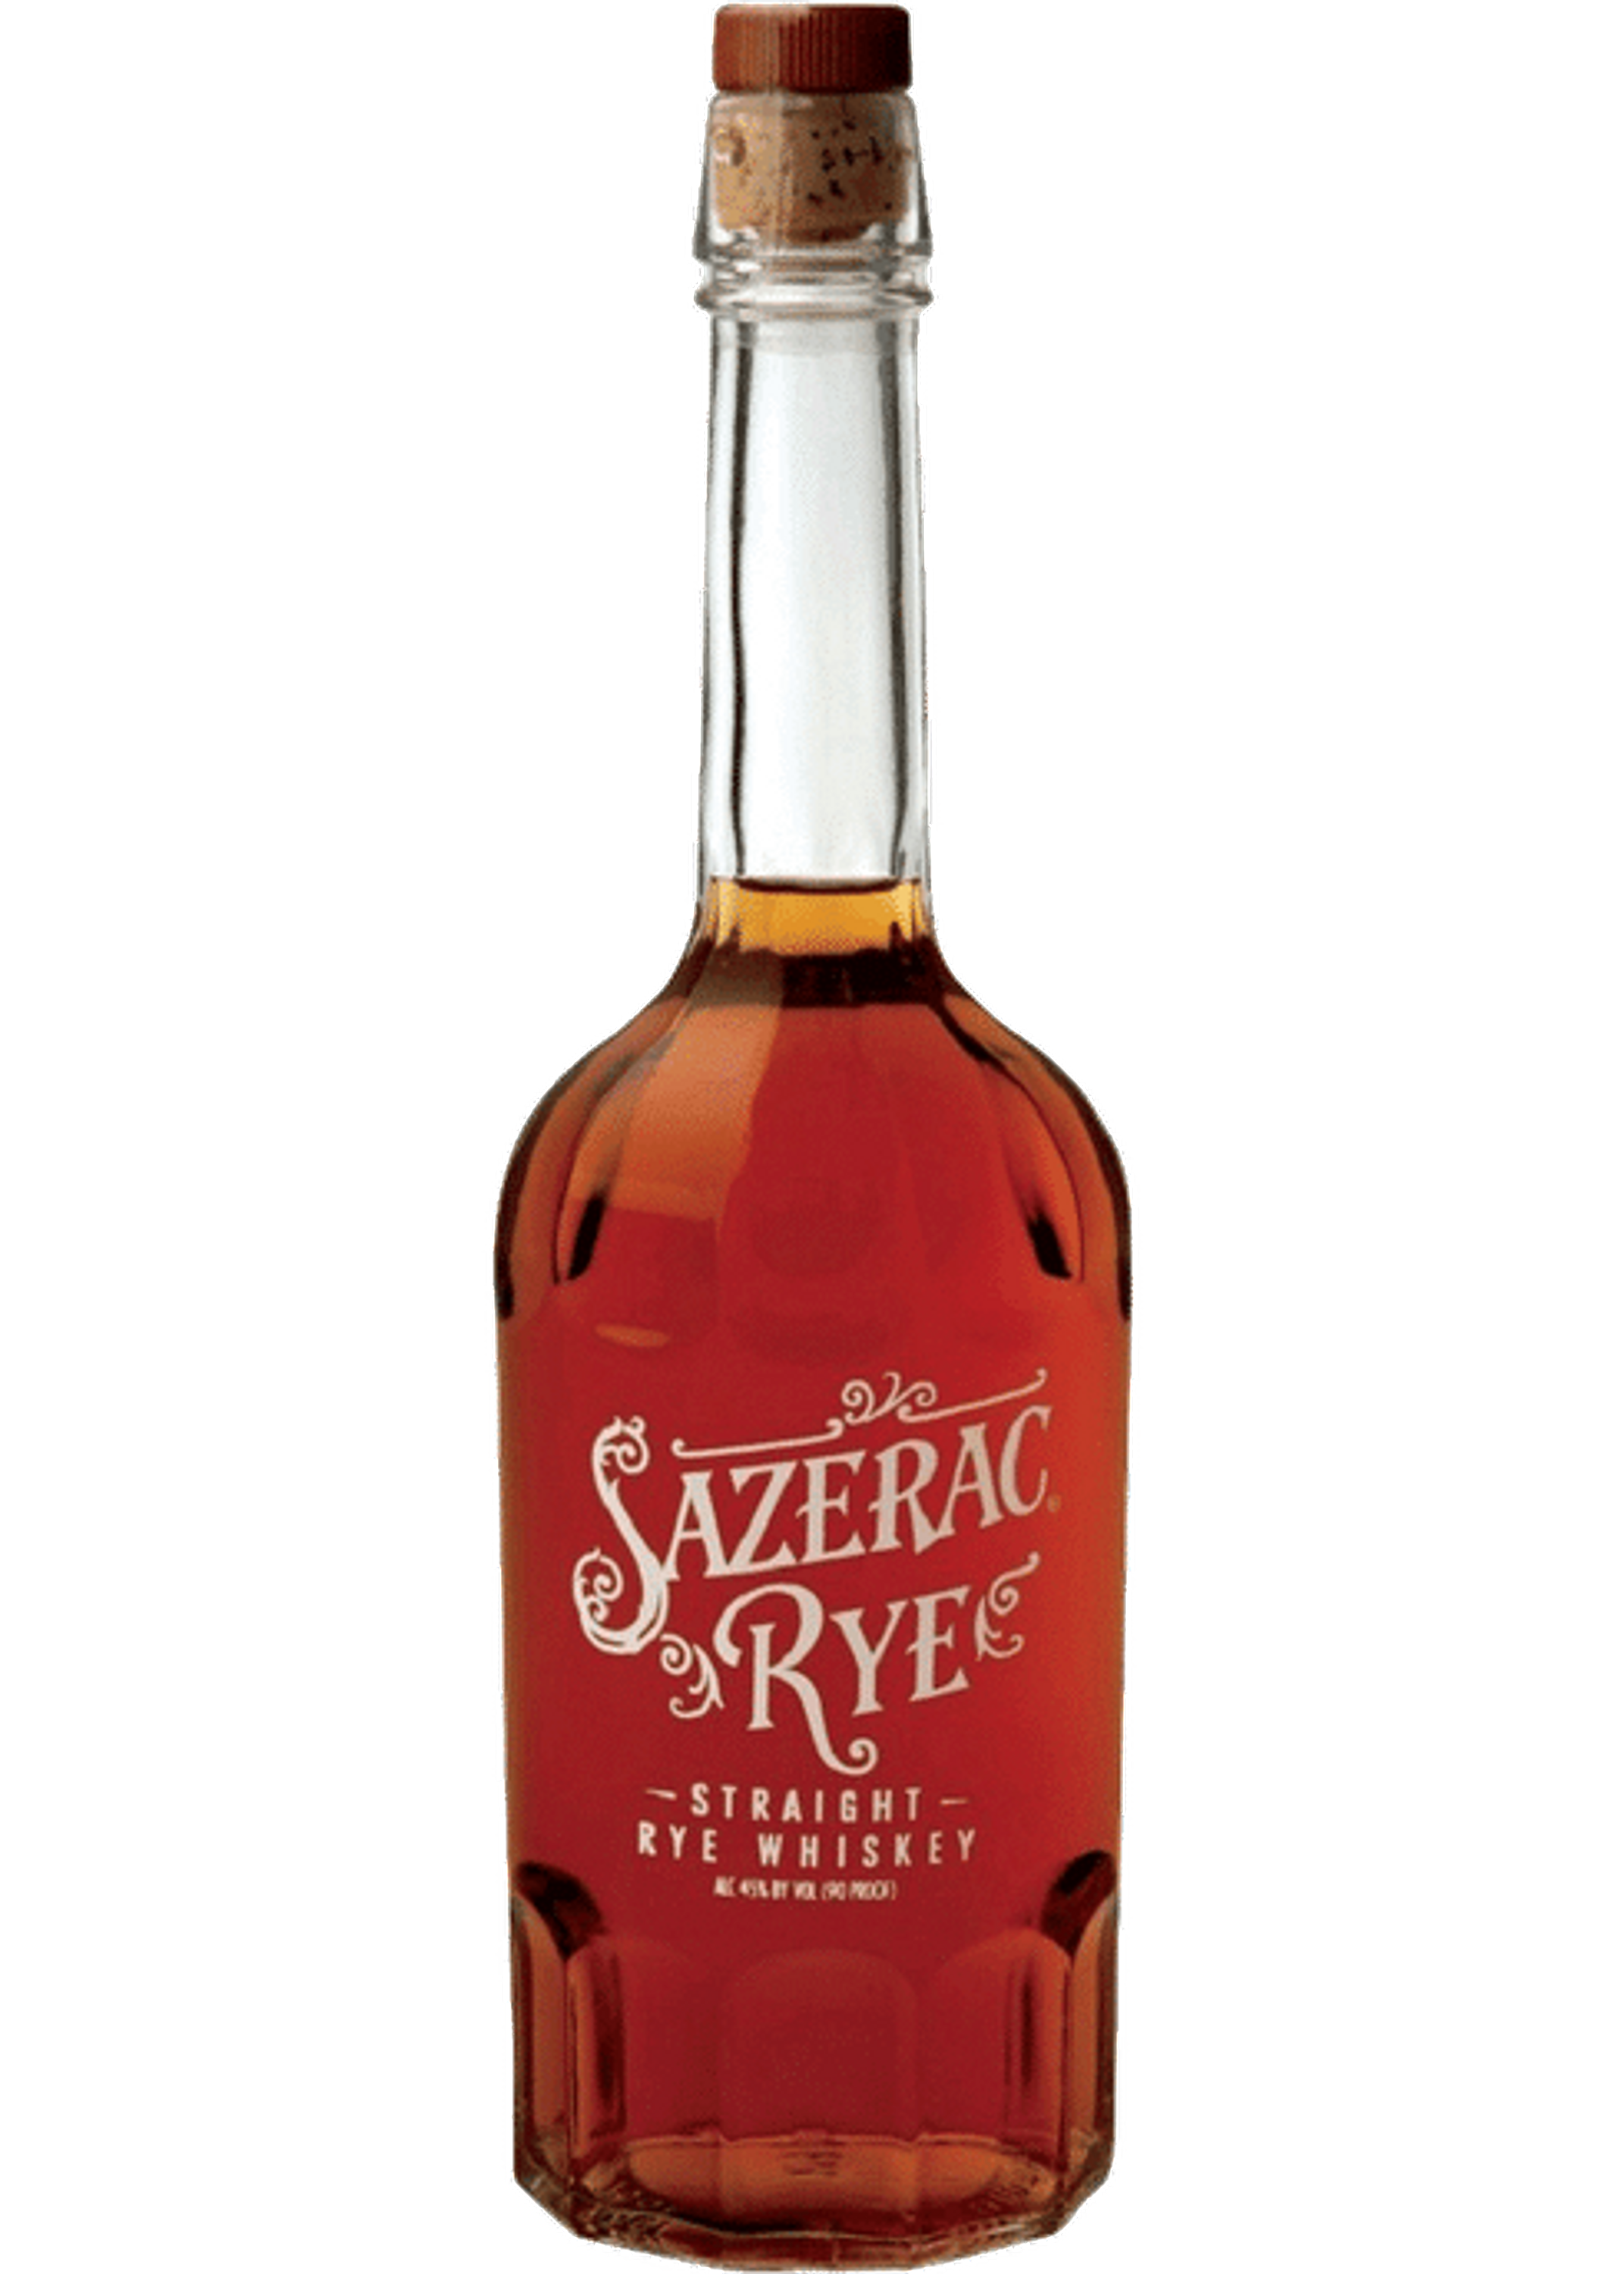 Sazerac Straight Rye Whiskey, 0.7l, 45% by volume